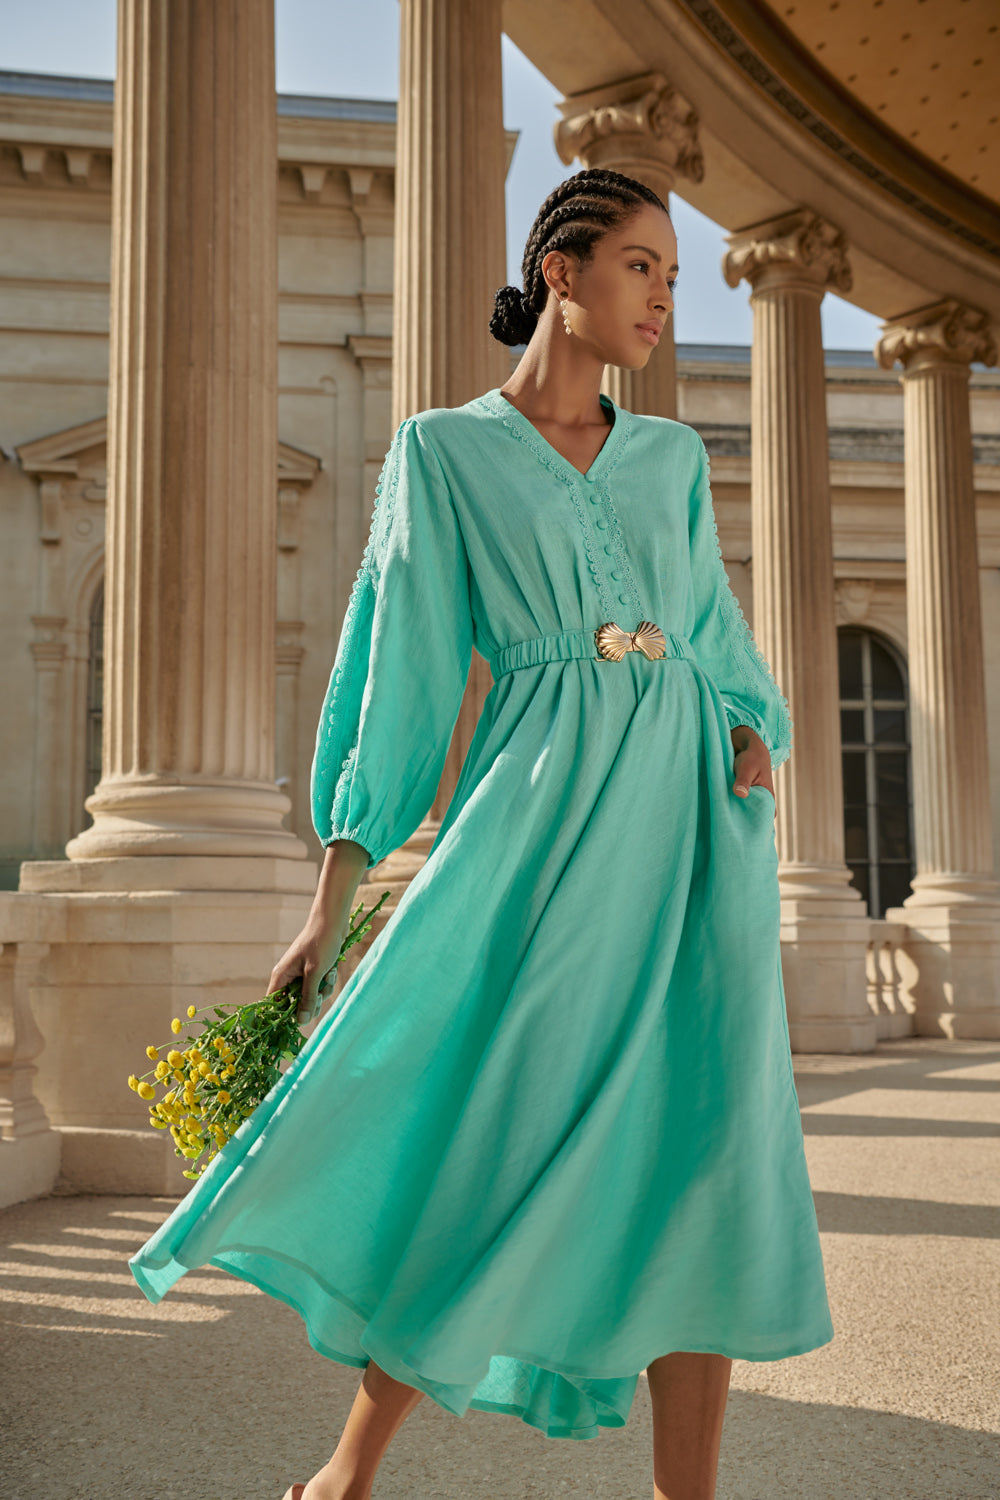 Linen Dress - Buy Linen Dresses Online at Best Price | SUPERBALIST